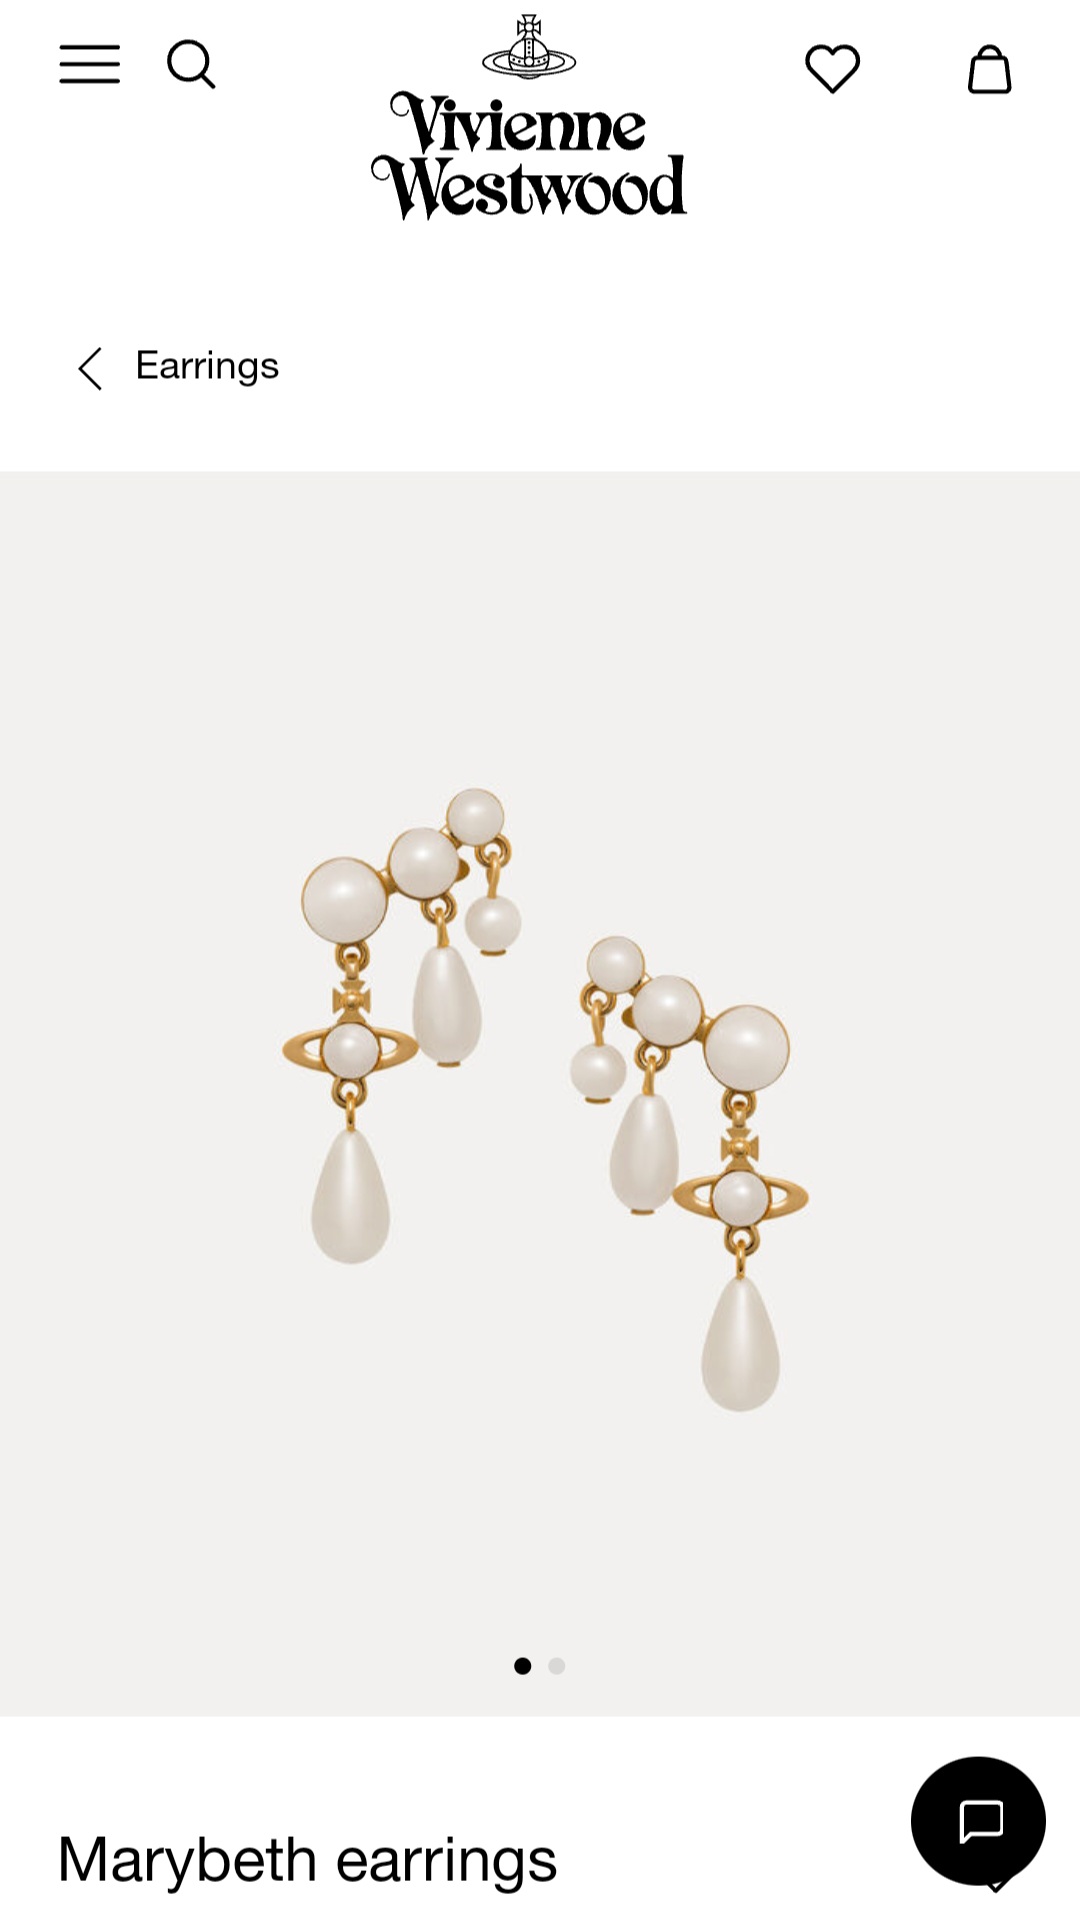 Vivienne Westwood Marybeth earrings